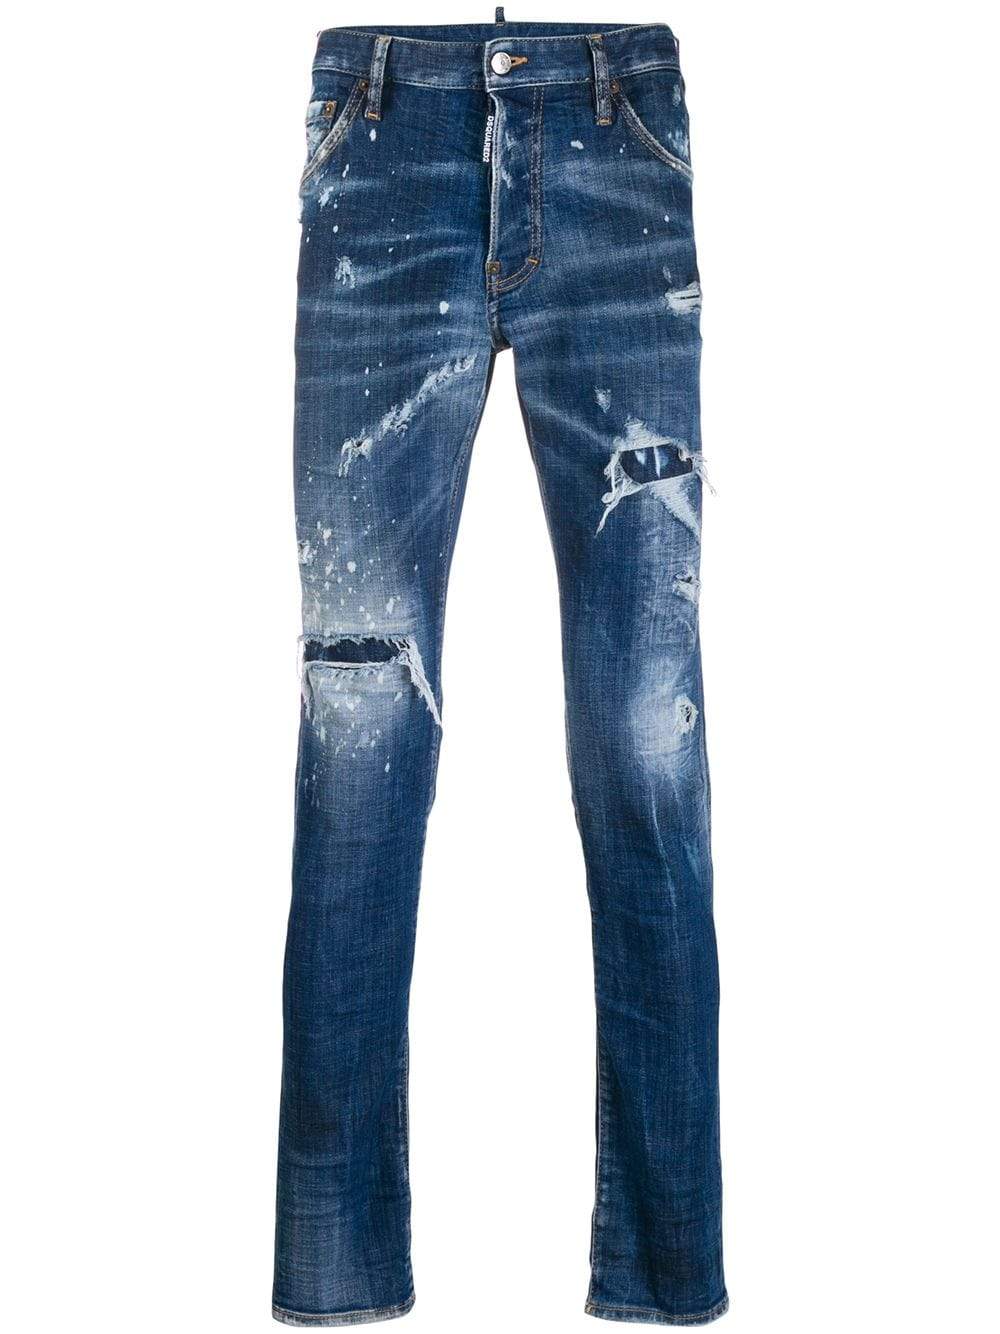 DSQUARED2 Cool Guy Logo Patch Jeans - MAISONDEFASHION.COM